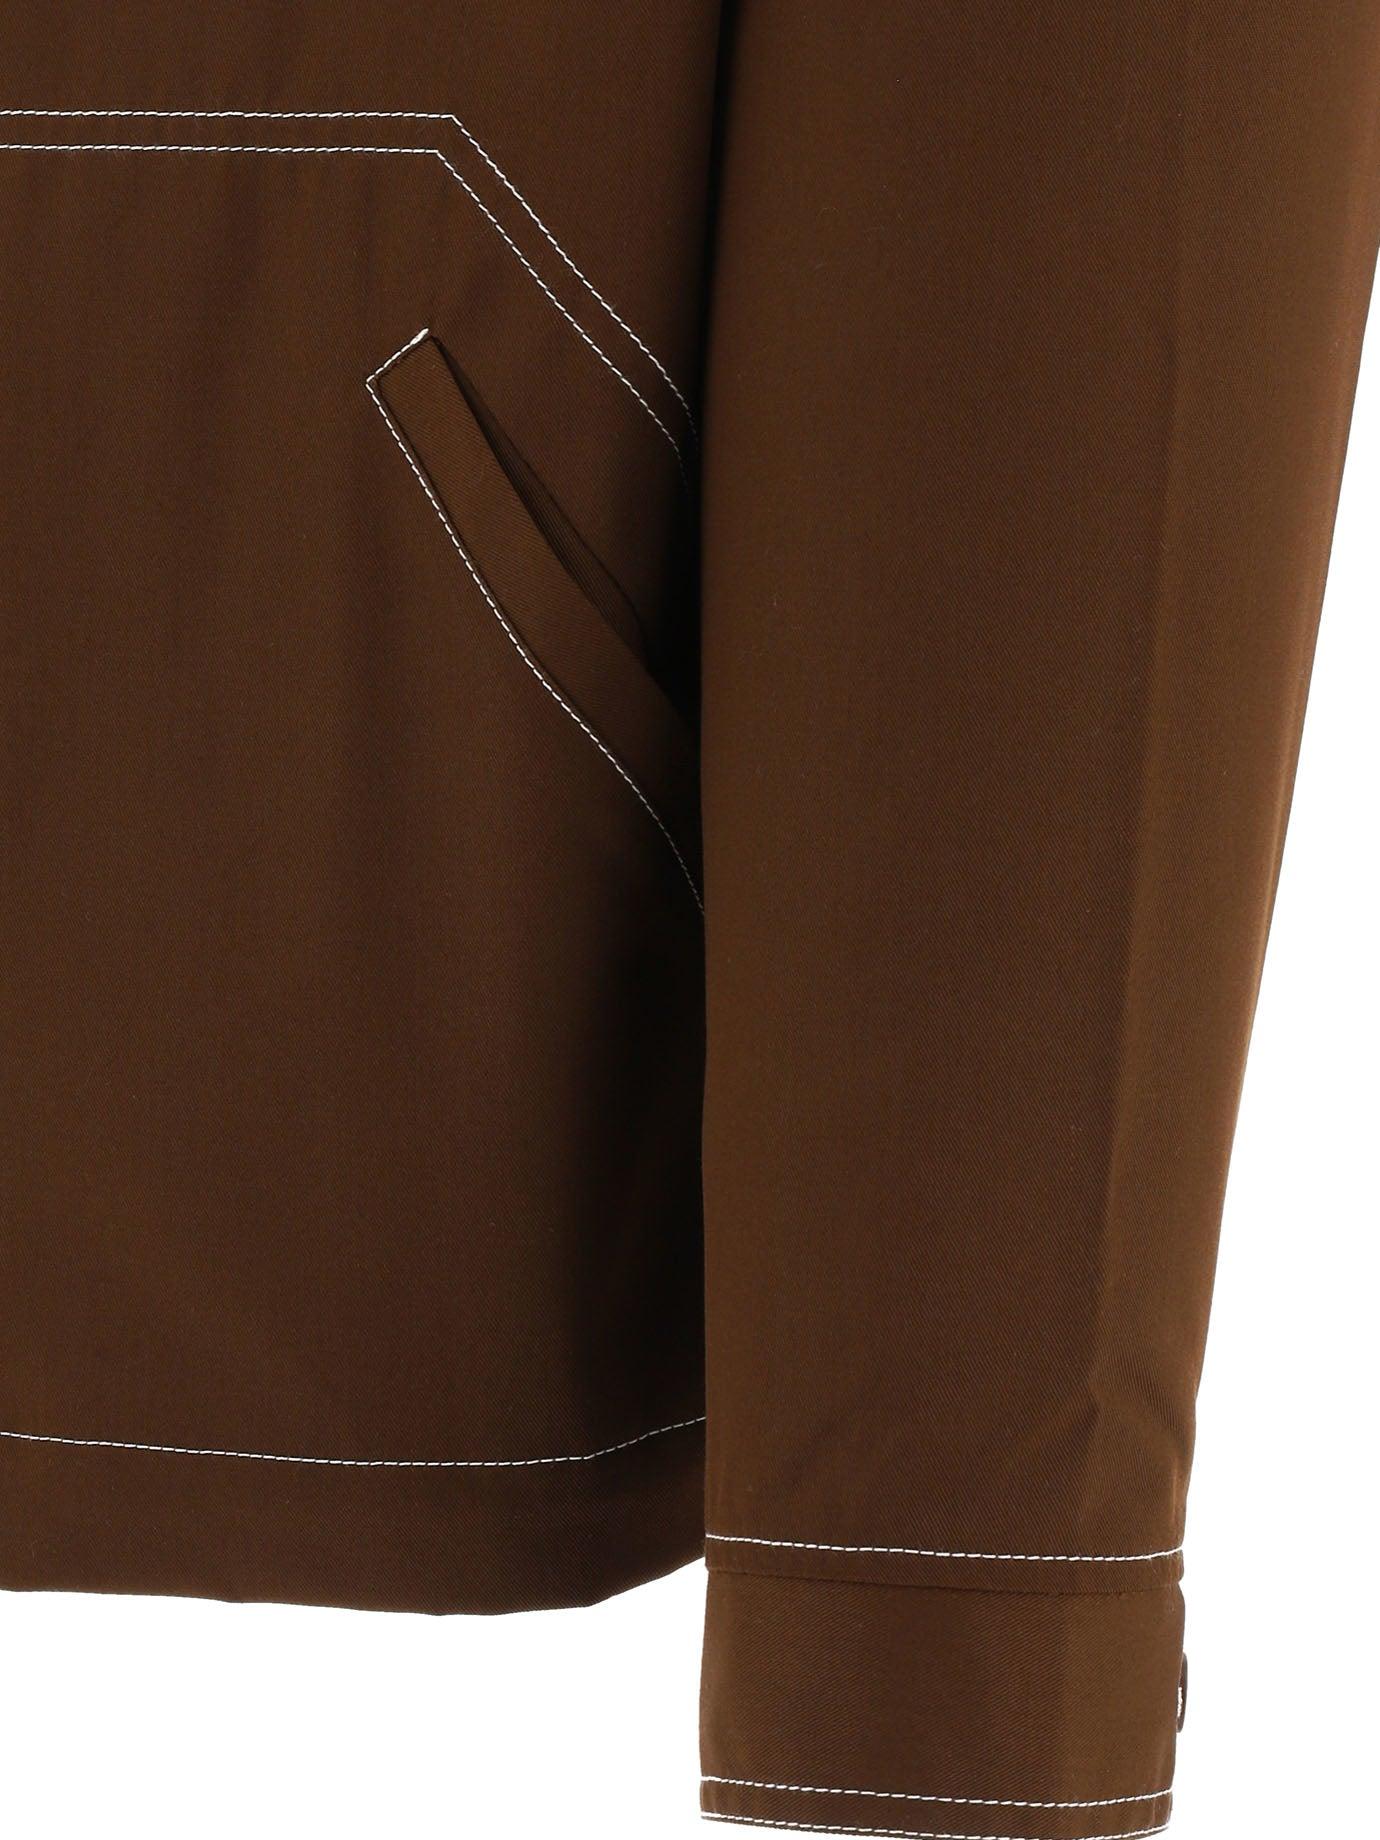 Rassvet (PACCBET) Overshirt With Zip in Brown for Men | Lyst